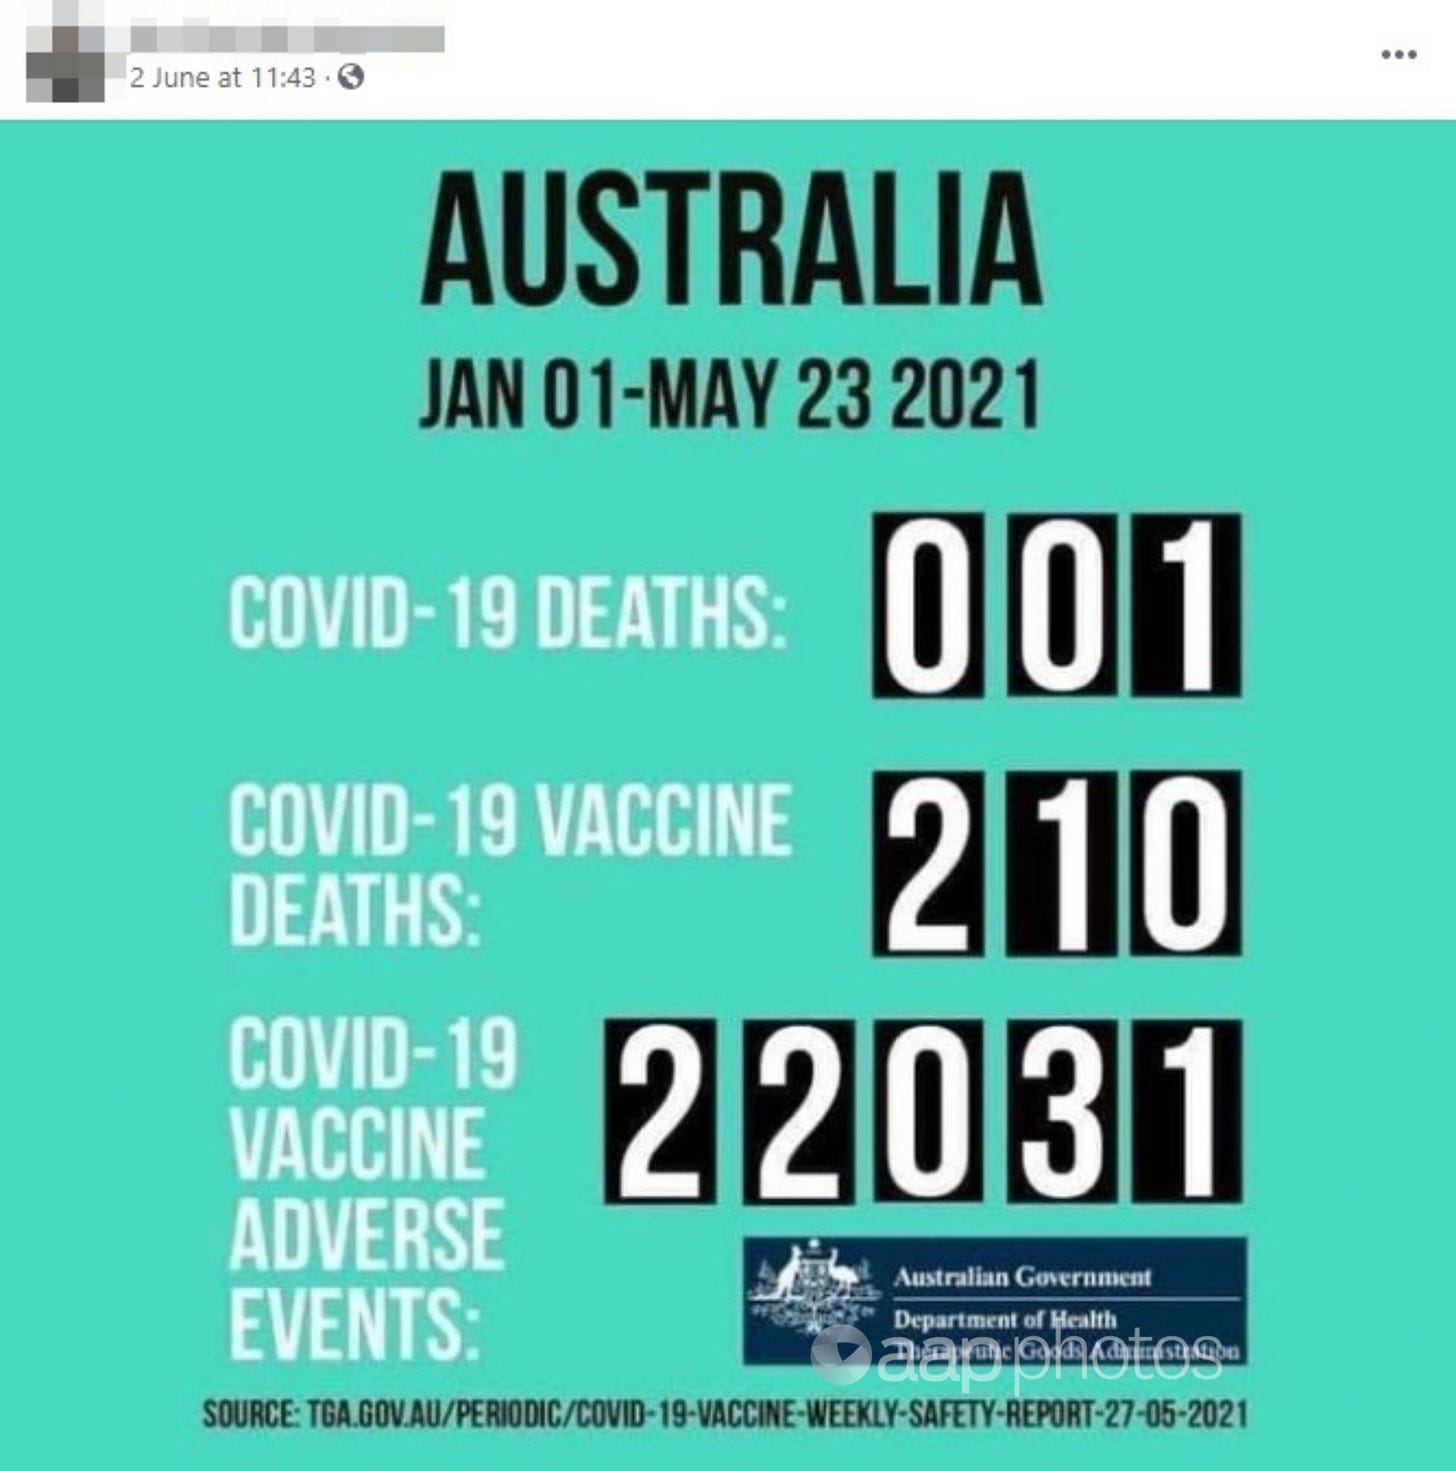 Meme misuses Australian data to falsely claim COVID-19 vaccine deaths ...